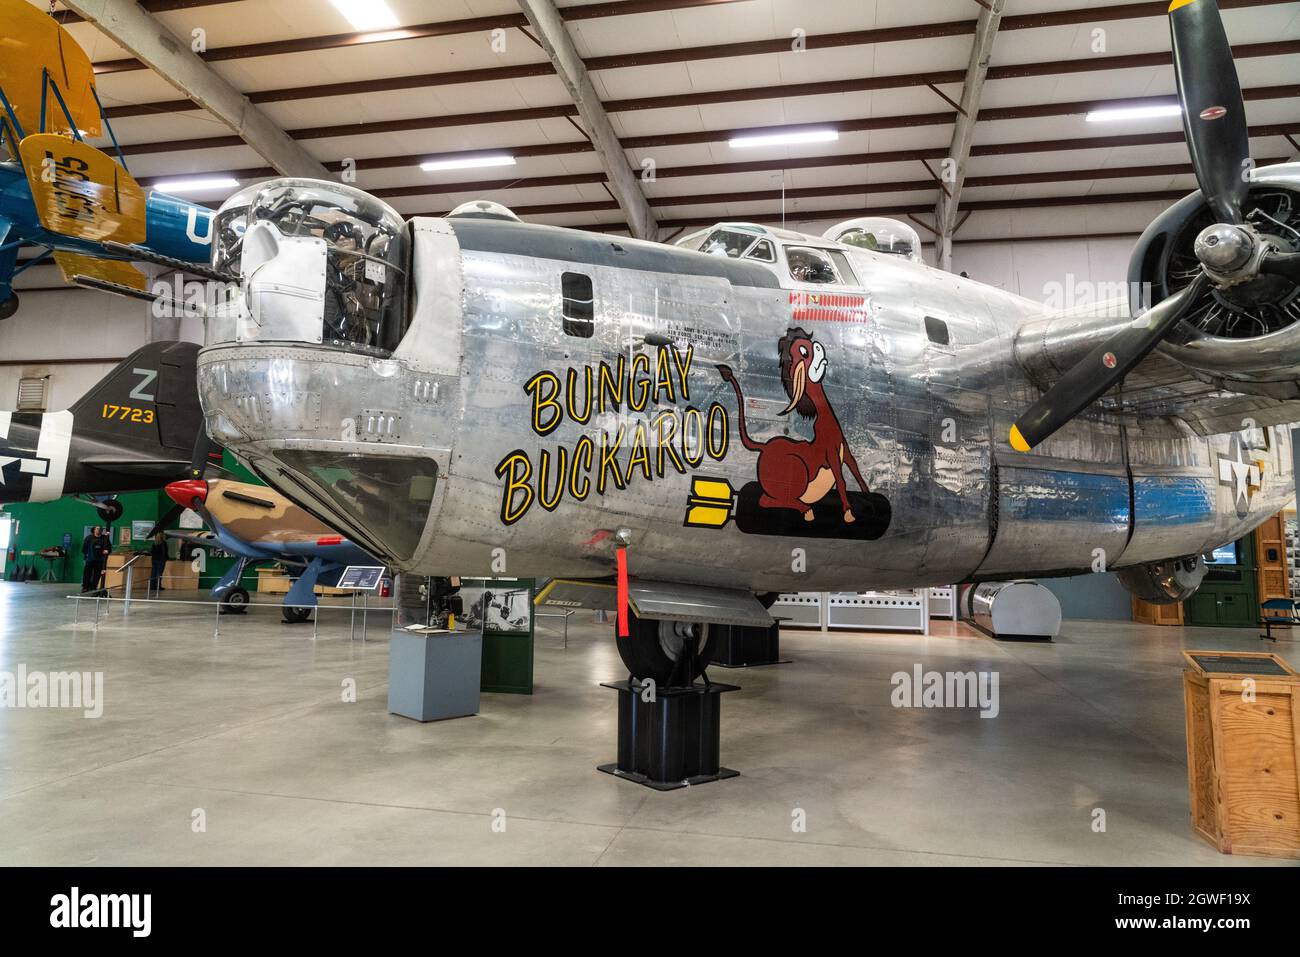 Un bombardero pesado B-24J consolidado de las Fuerzas Aéreas del Ejército de los Estados Unidos en el Pima Air & Space Museum, Tucson, Arizona. Foto de stock